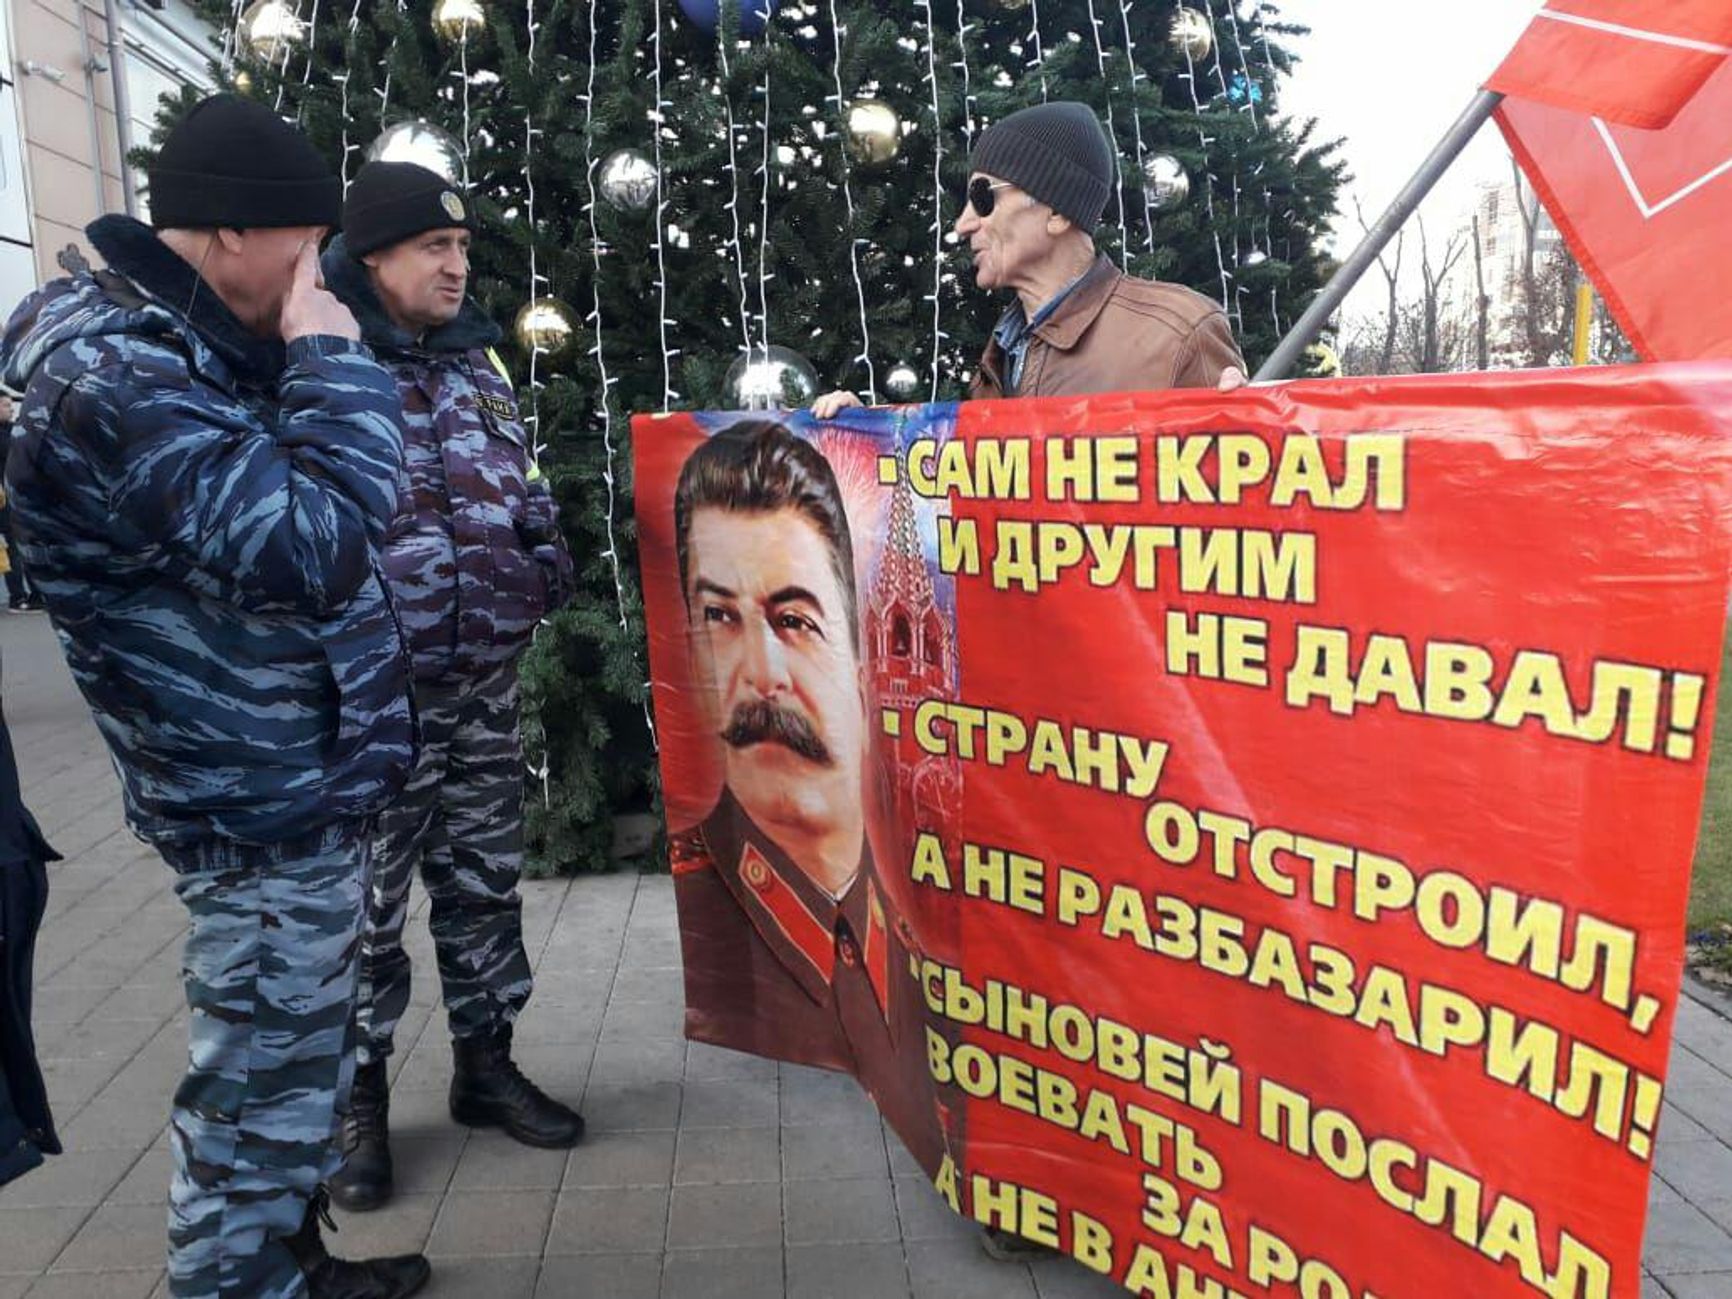 Краснодар, 2019 г. День рождения Сталина: против этих пикетов полиция не возражает